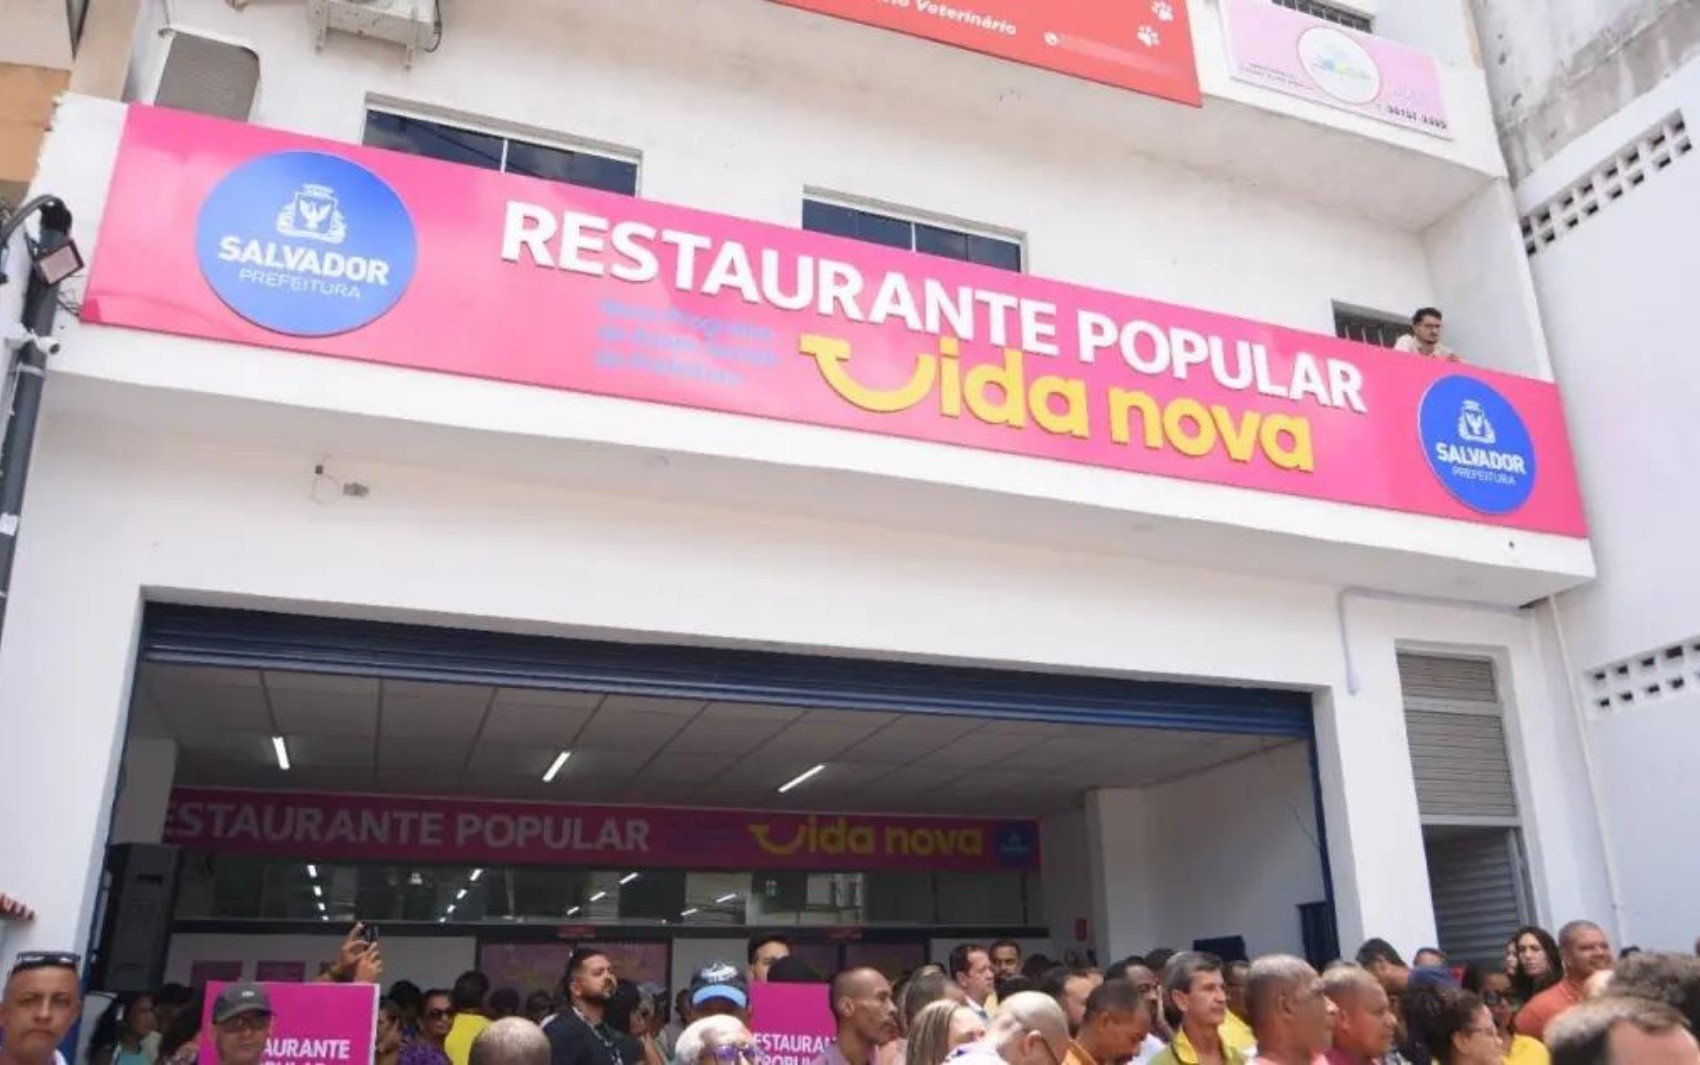 Restaurantes Populares de Salvador oferecem comida baiana gratuita nesta quinta-feira